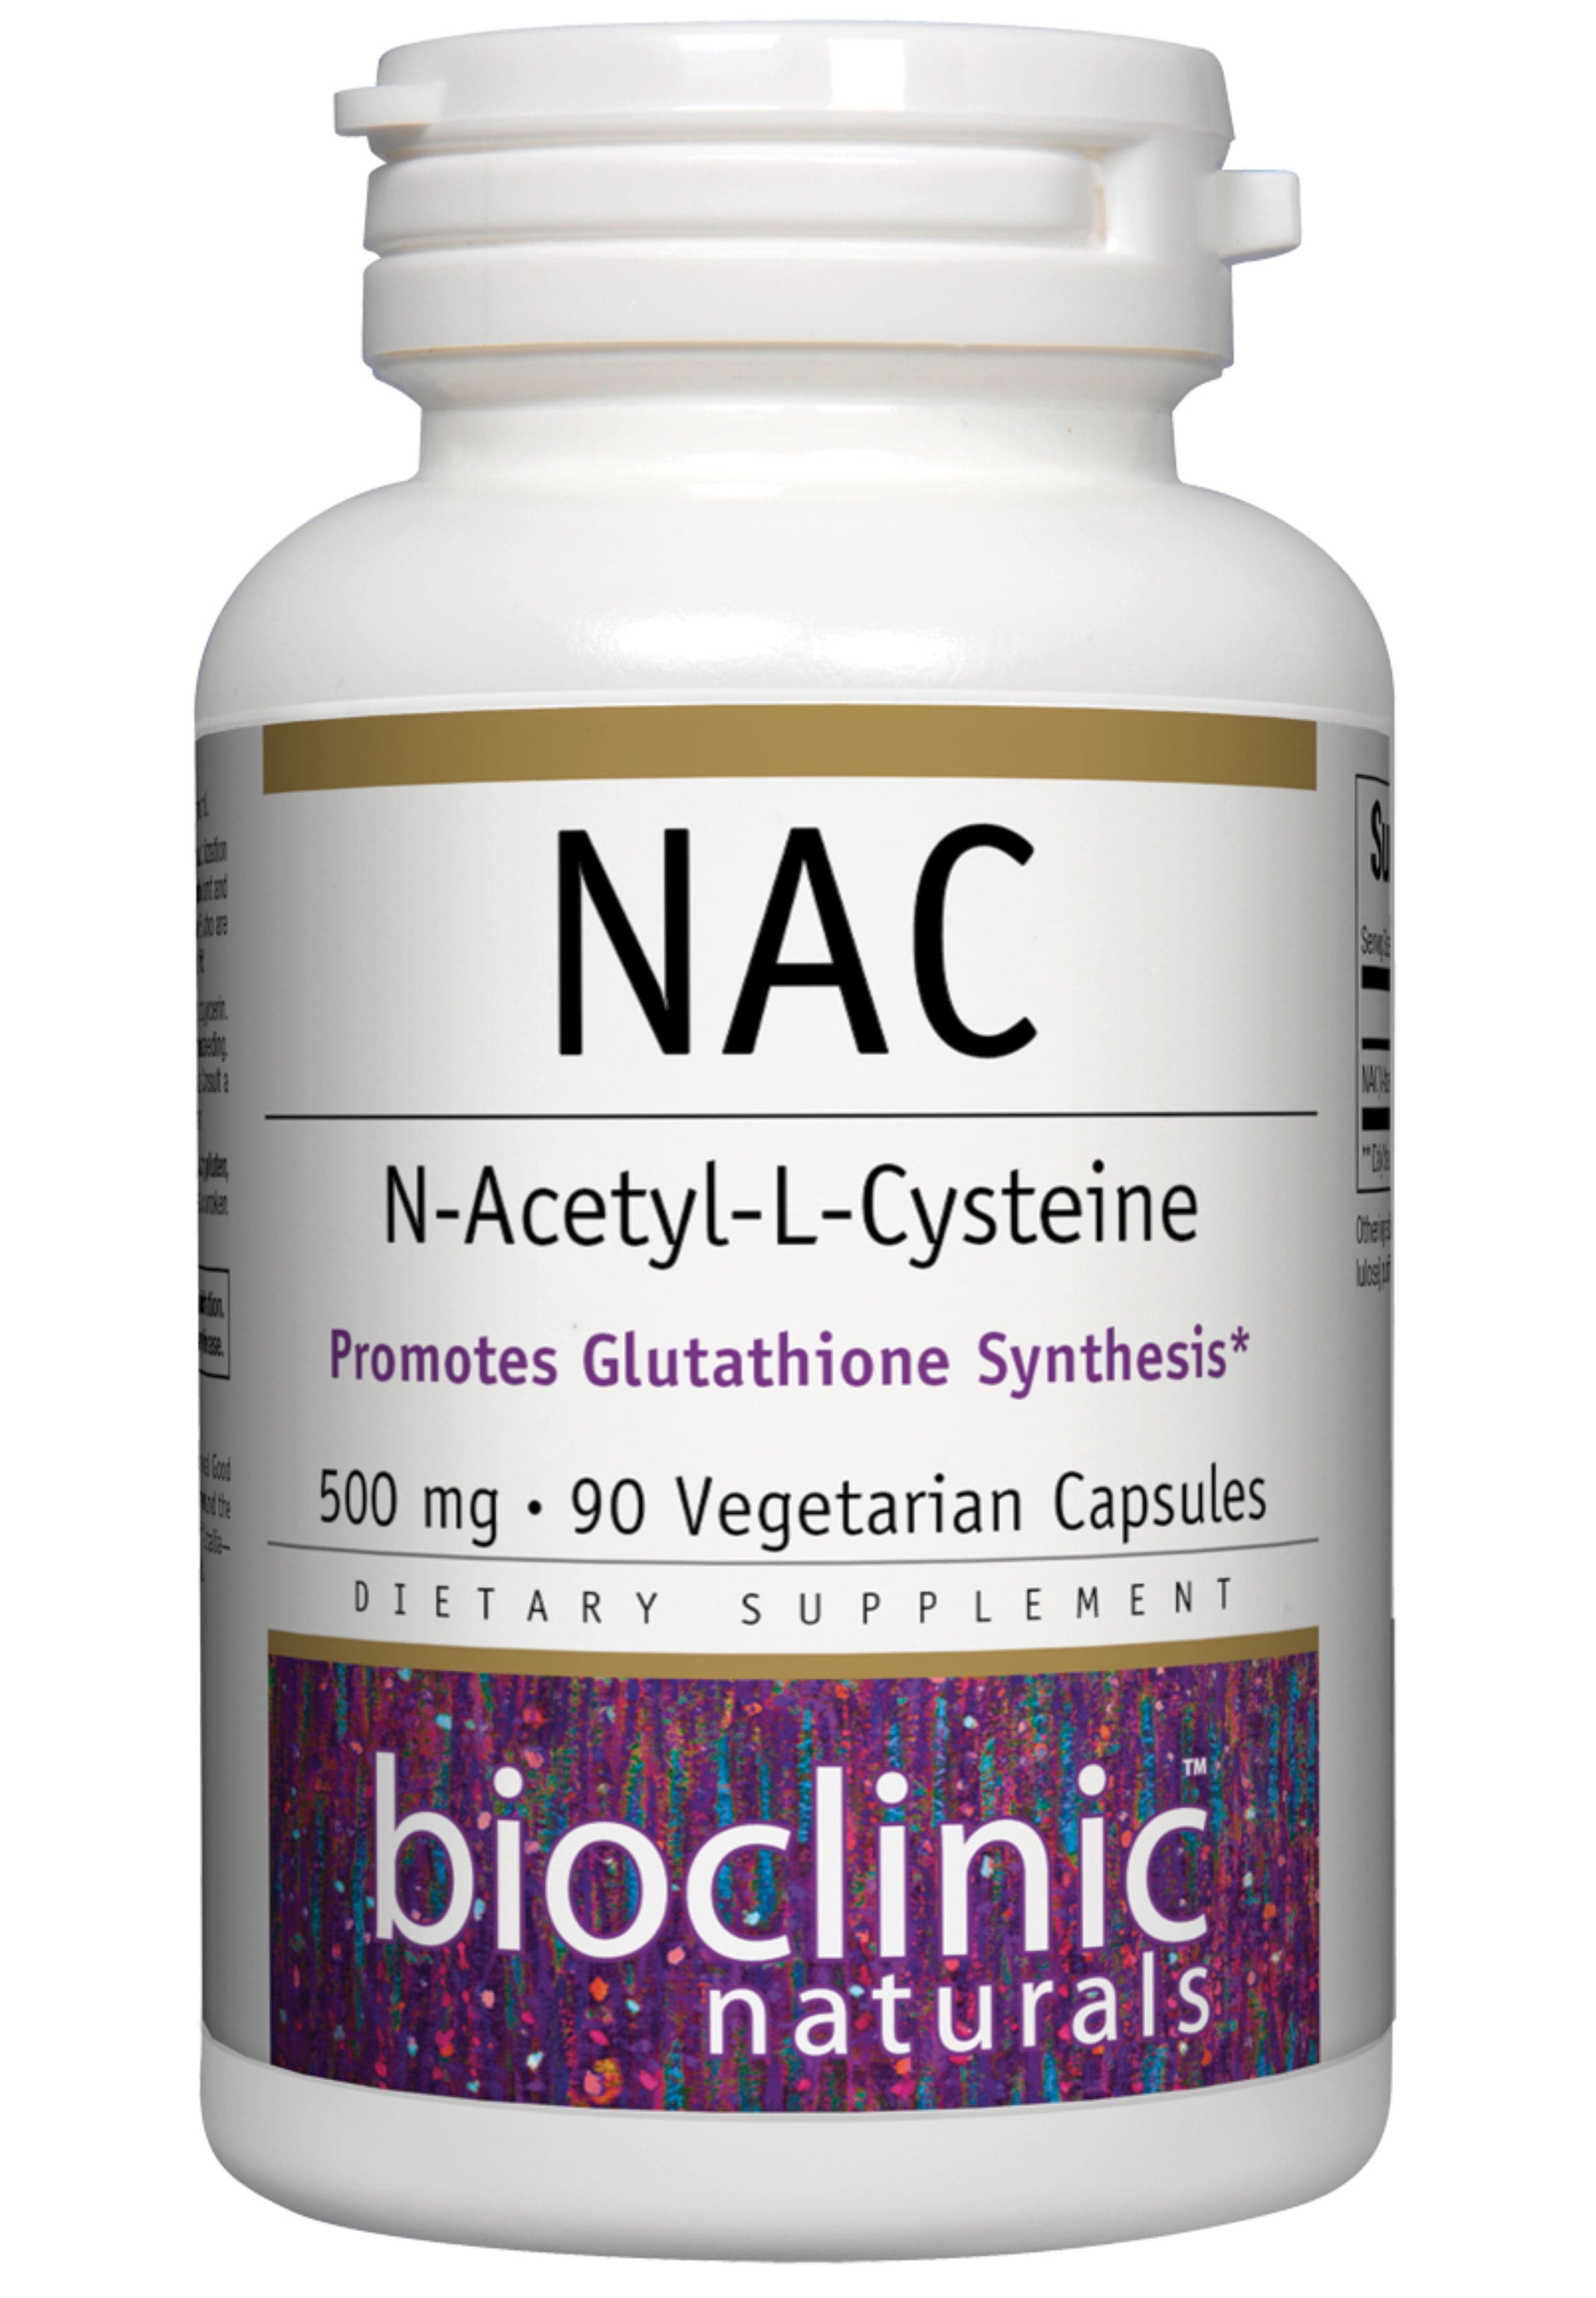 Bioclinic Naturals NAC 500 mg